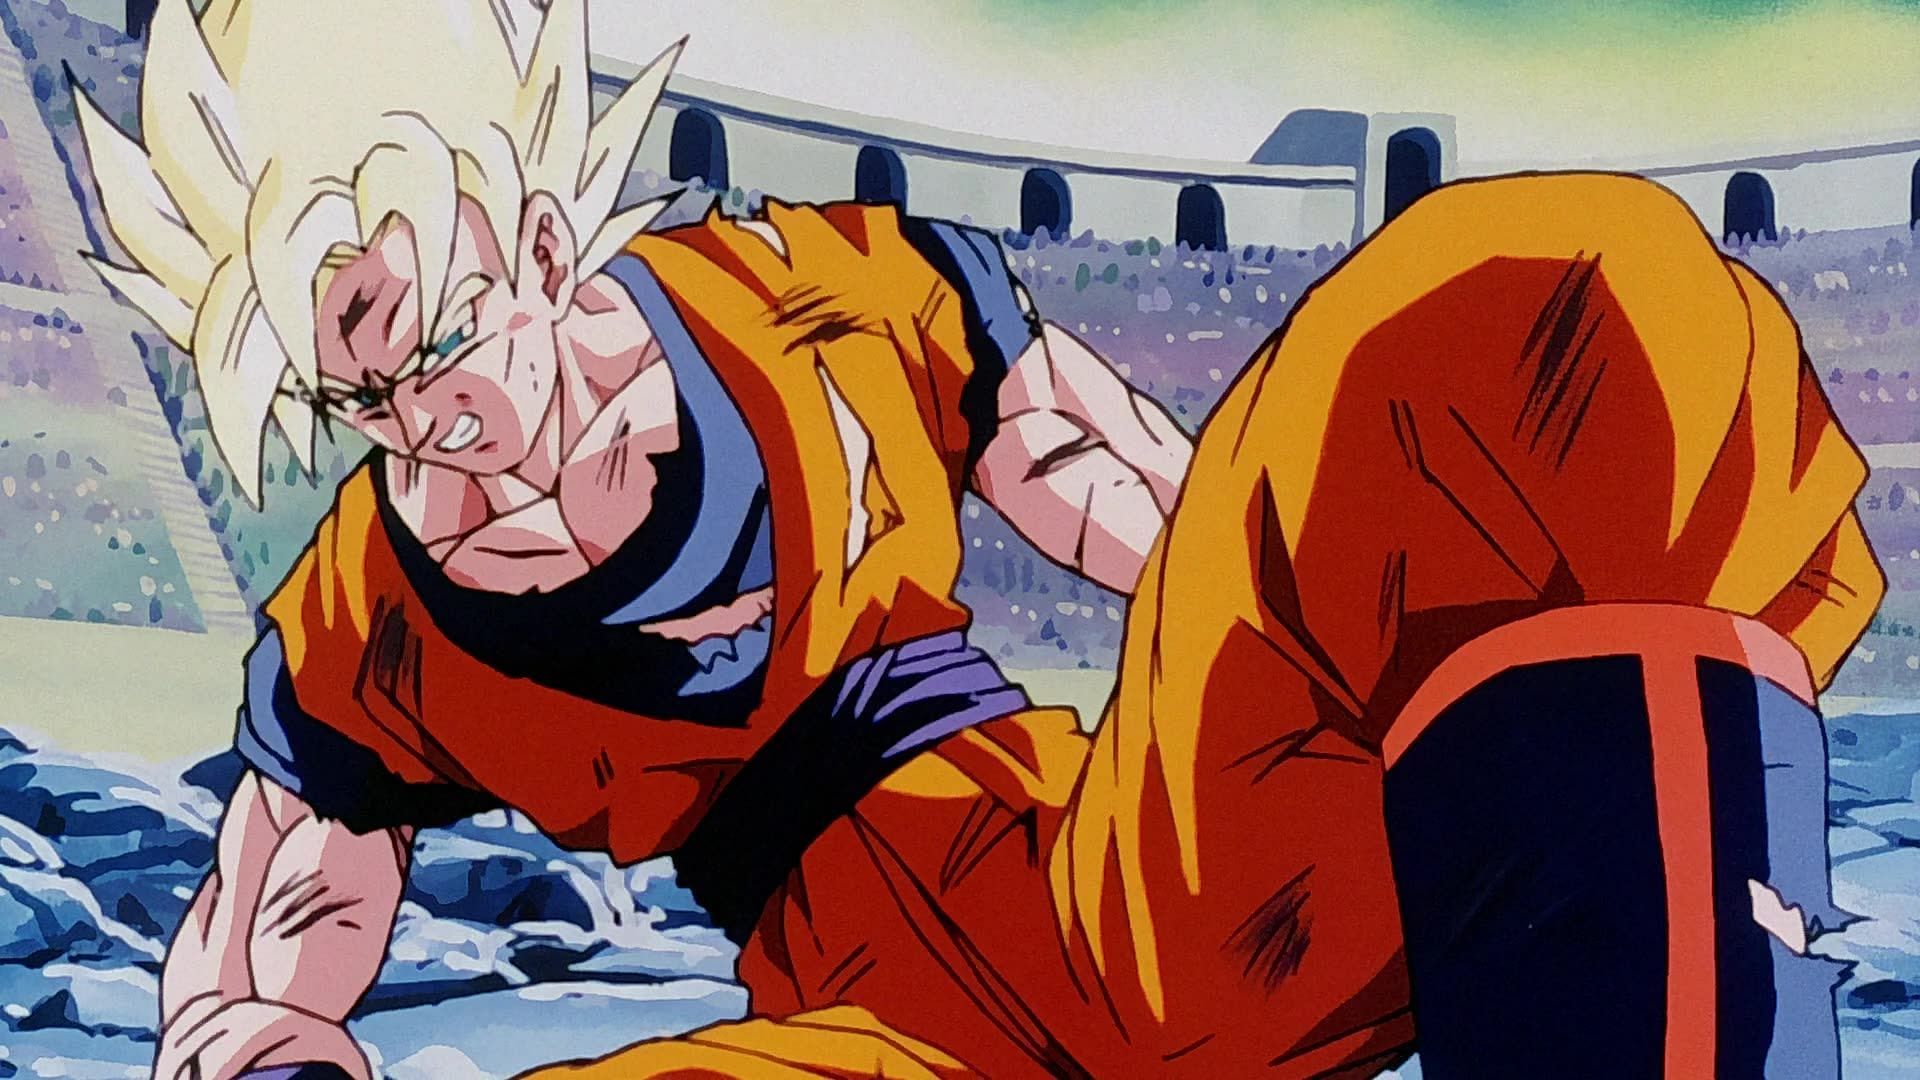 Goku, Marvel'in Mighty Thor'unu yenecek kadar güçlü olmazdı (Resim üzerinden Akira Toriyama/Shueisha, Viz Media, Dragon Ball Z)